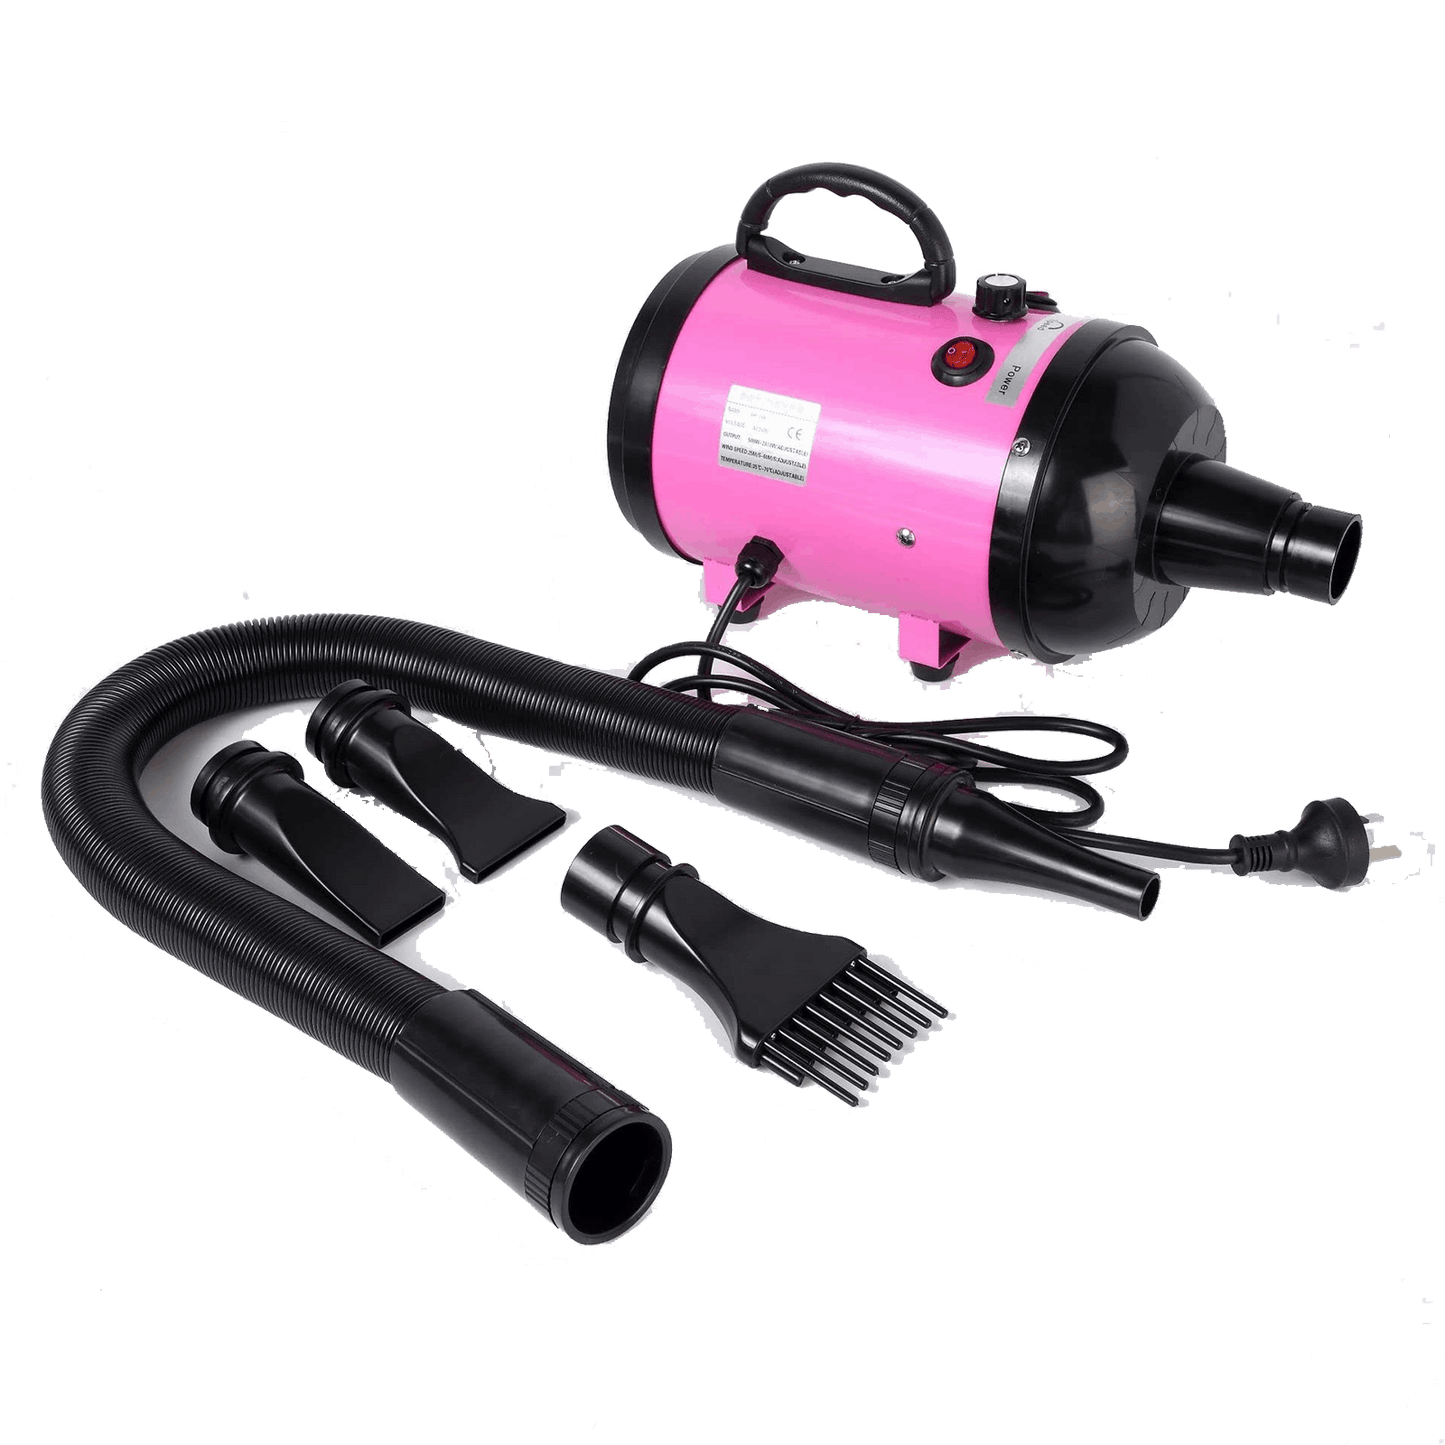 2800W Pet Blow Dryer 4 Nozzles - Pink